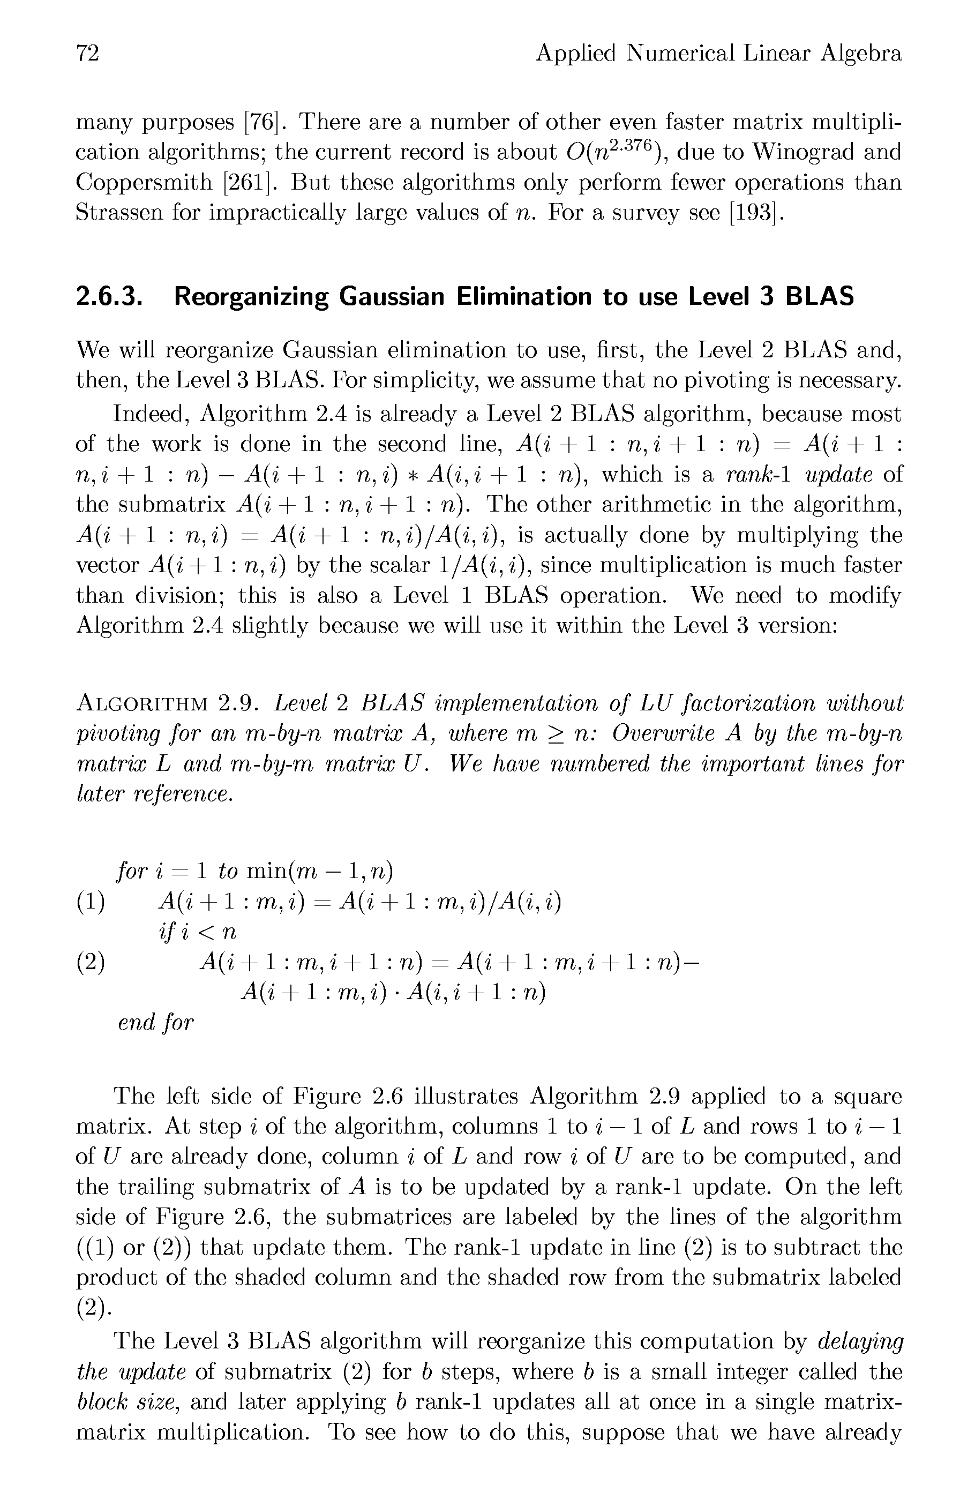 2.6.3 Reorganizing Gaussian Elimination to use Level 3 BLAS